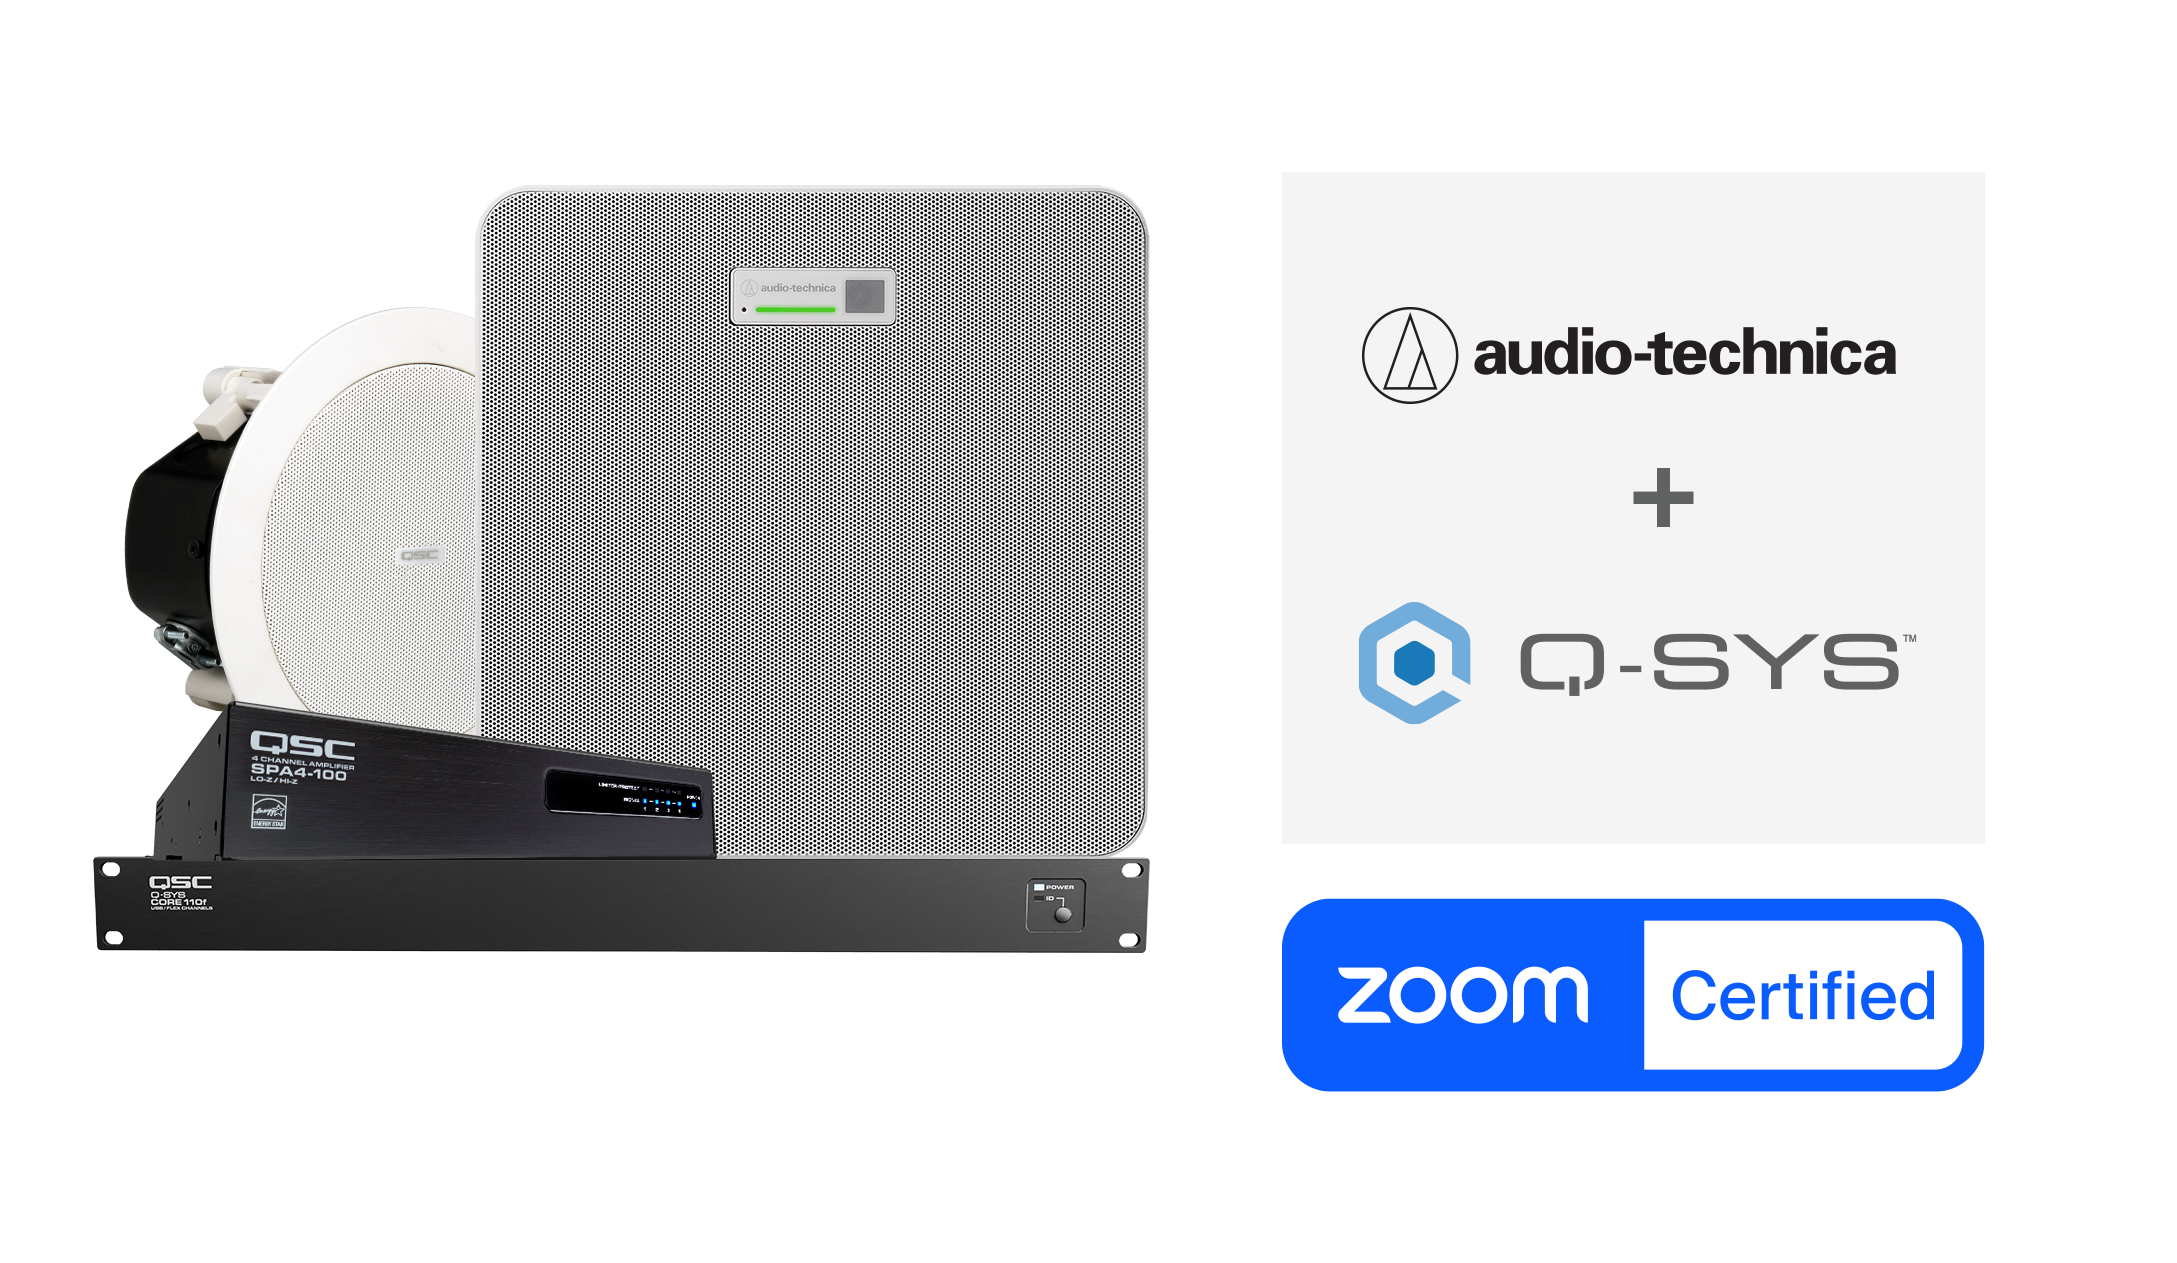 Audio-Technica ATND1061DAN Deckenmikrofon-Array in Kombination mit Q-SYS für Zoom Rooms zertifiziert